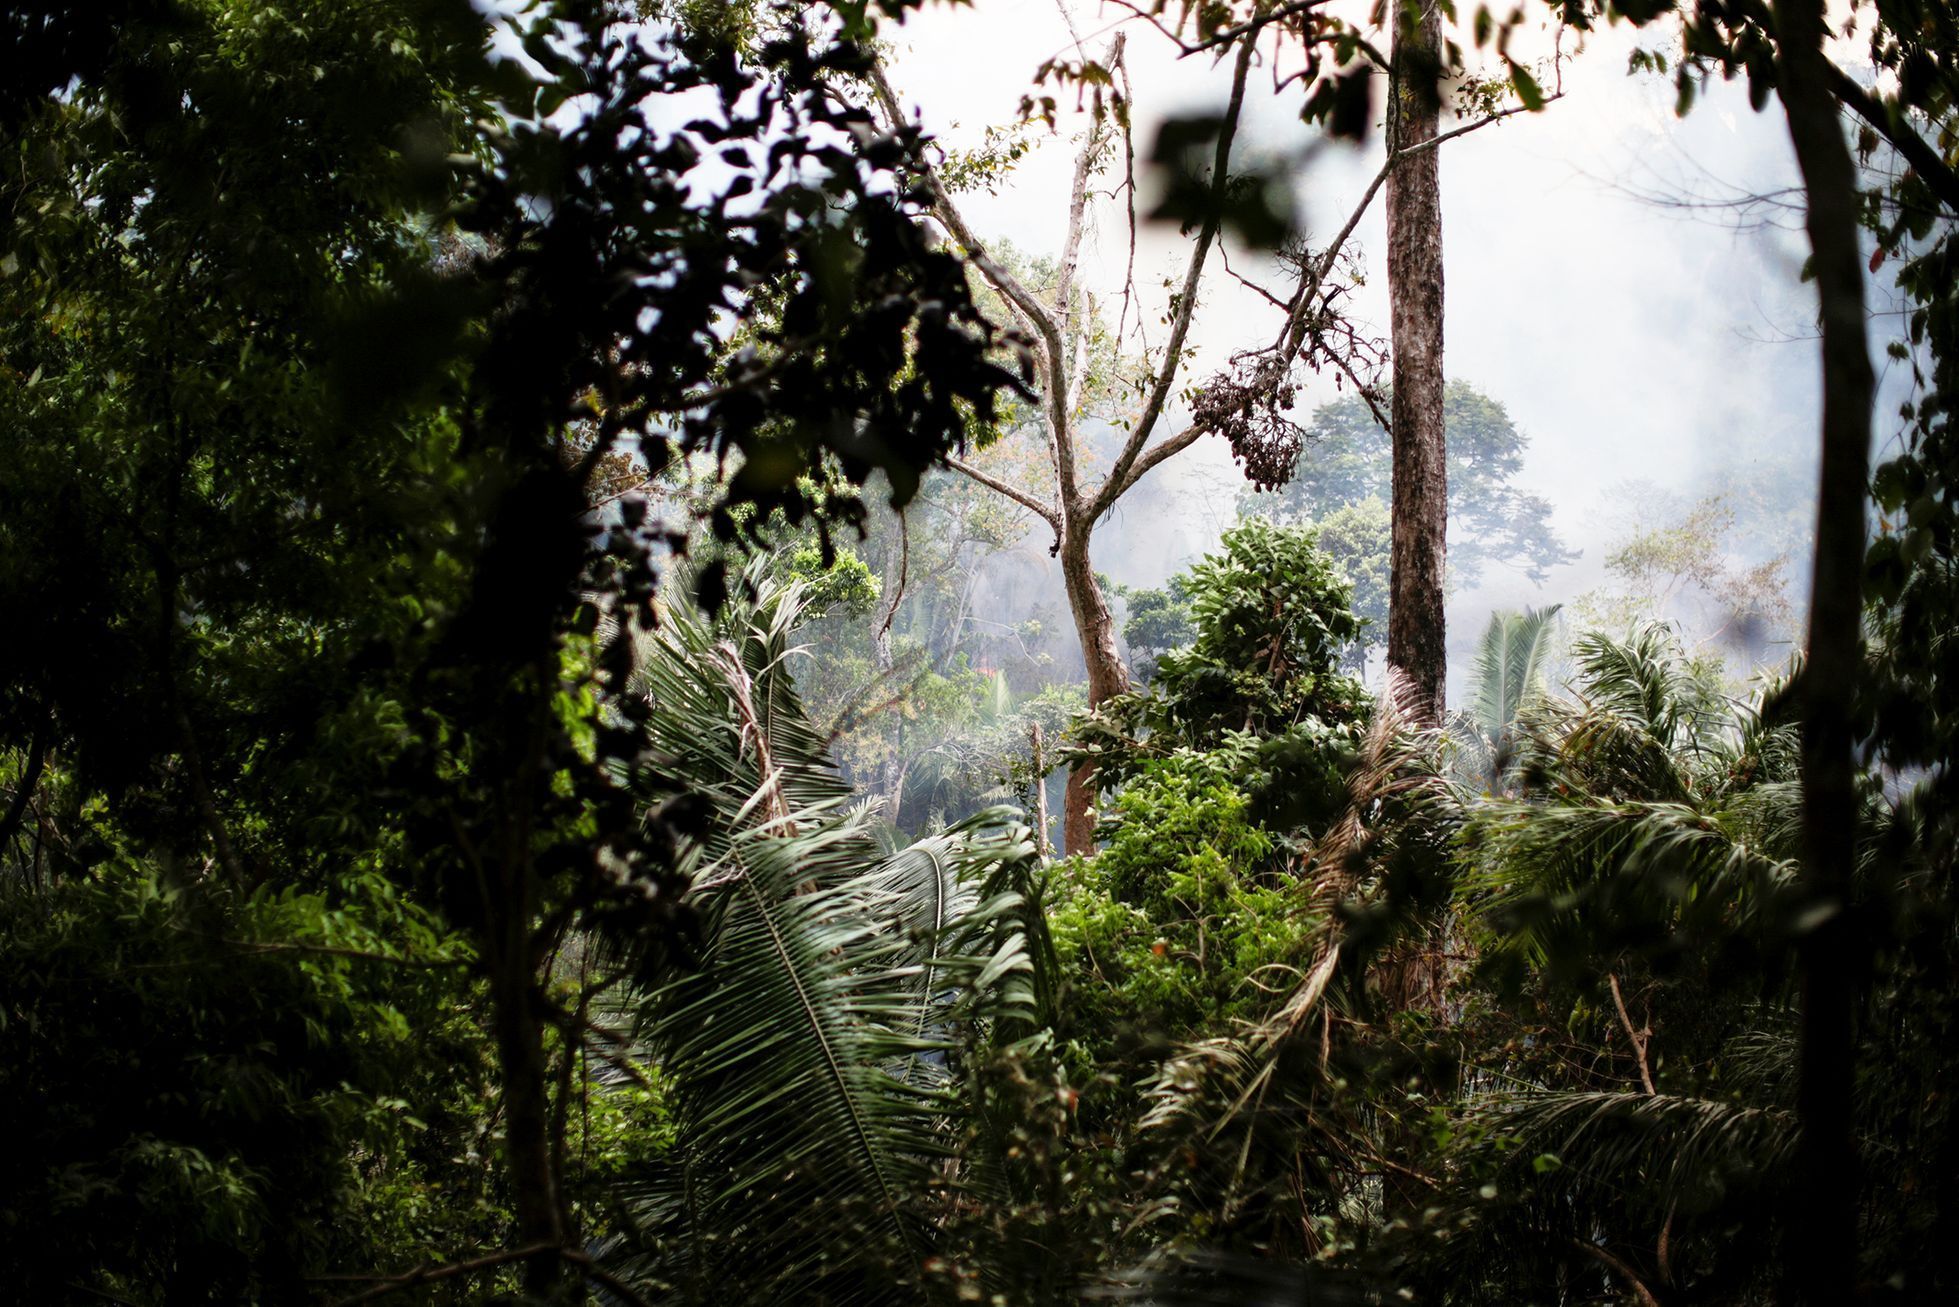 Jednorázové užití / Fotogalerie / Mise plná dojímavé humanity. Tak vypadá záchrana zvířat v Amazonii